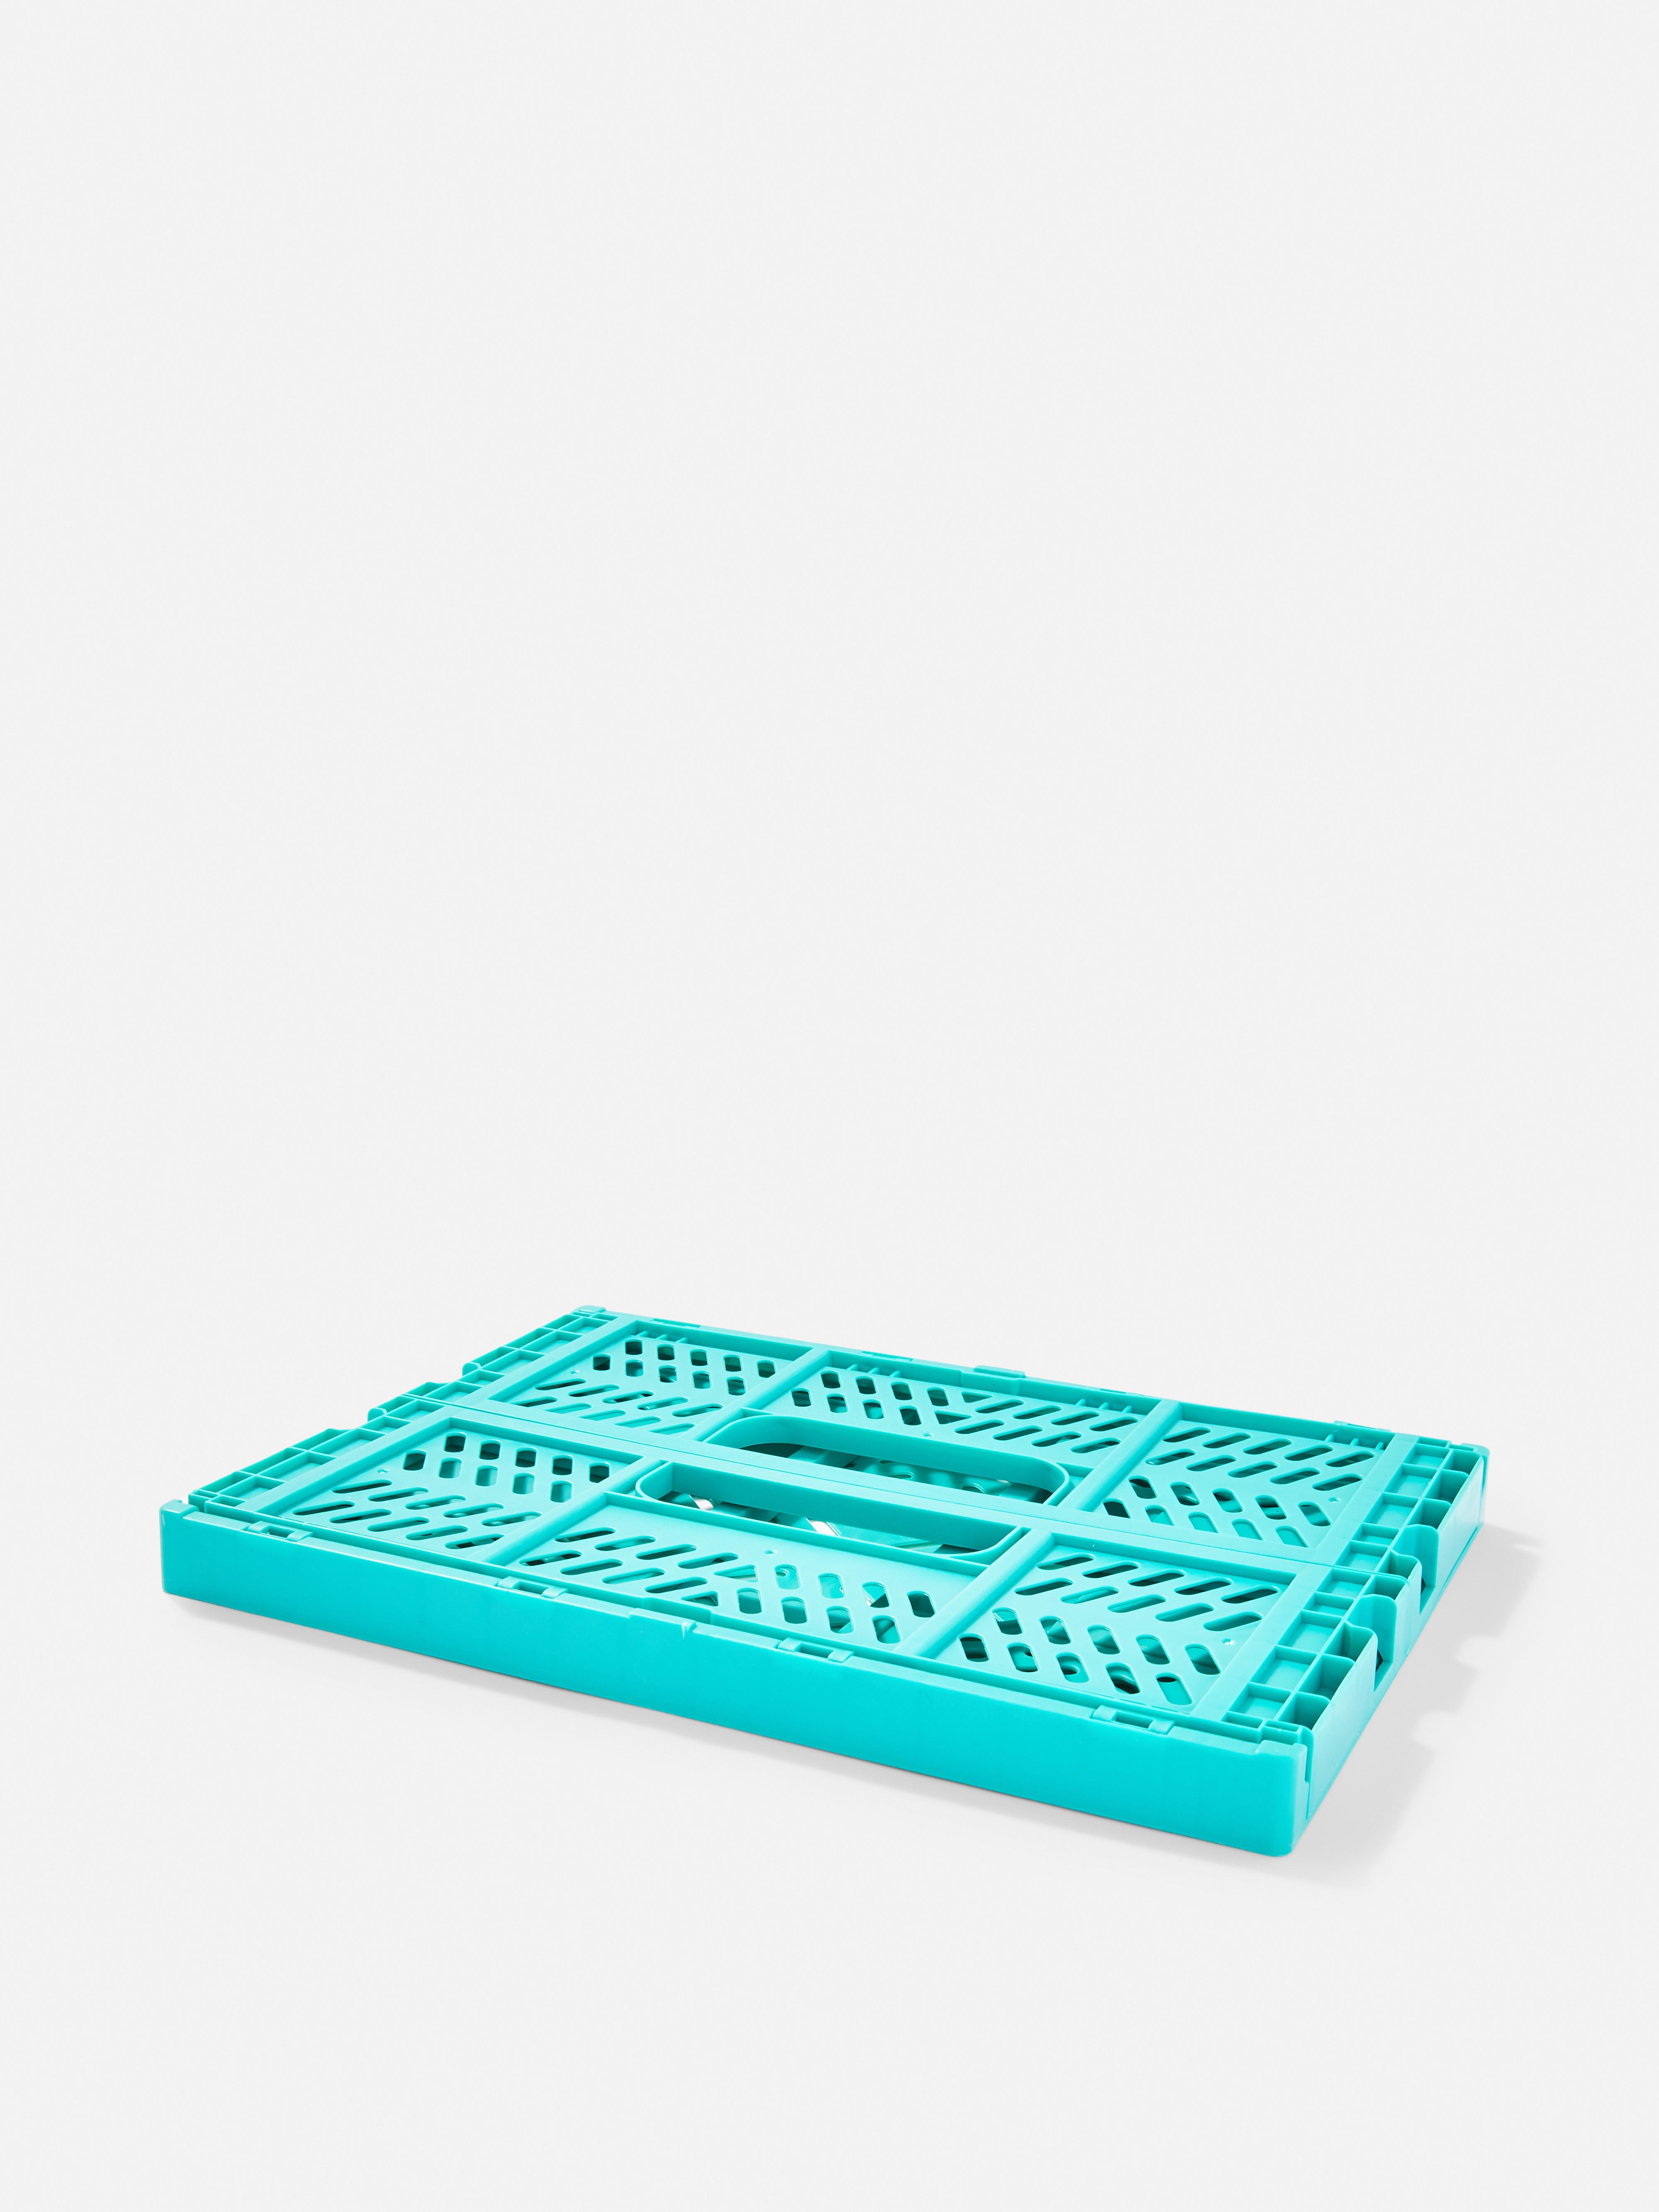 Medium Plastic Crate